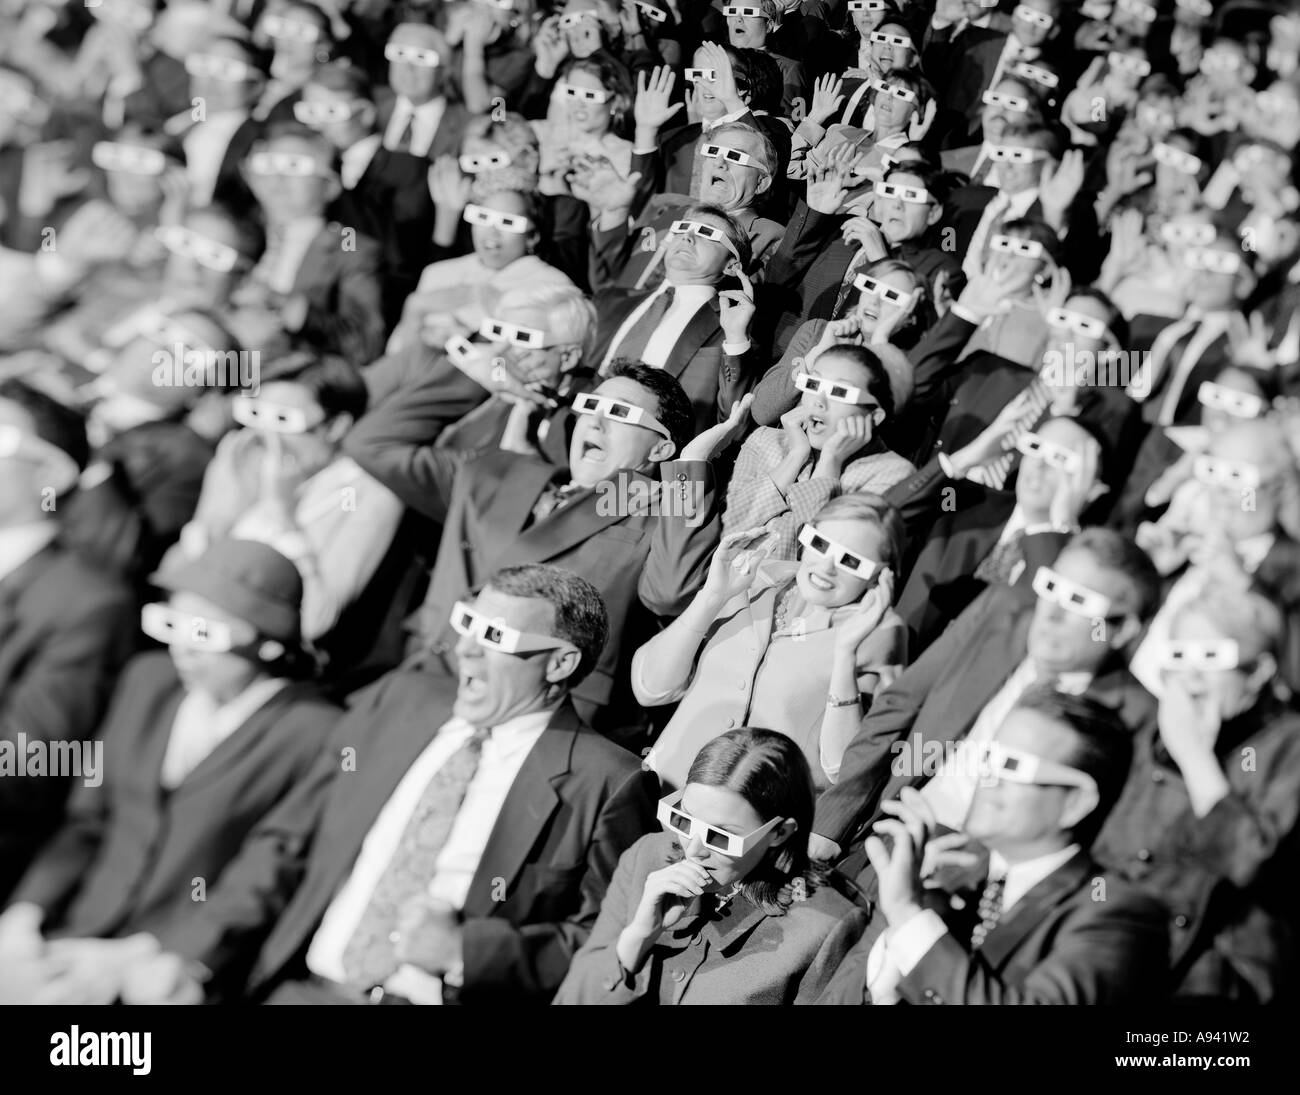 Un alto ángulo de visualización de un grupo de espectadores sentados en un cine de llevar gafas 3D. Foto de stock